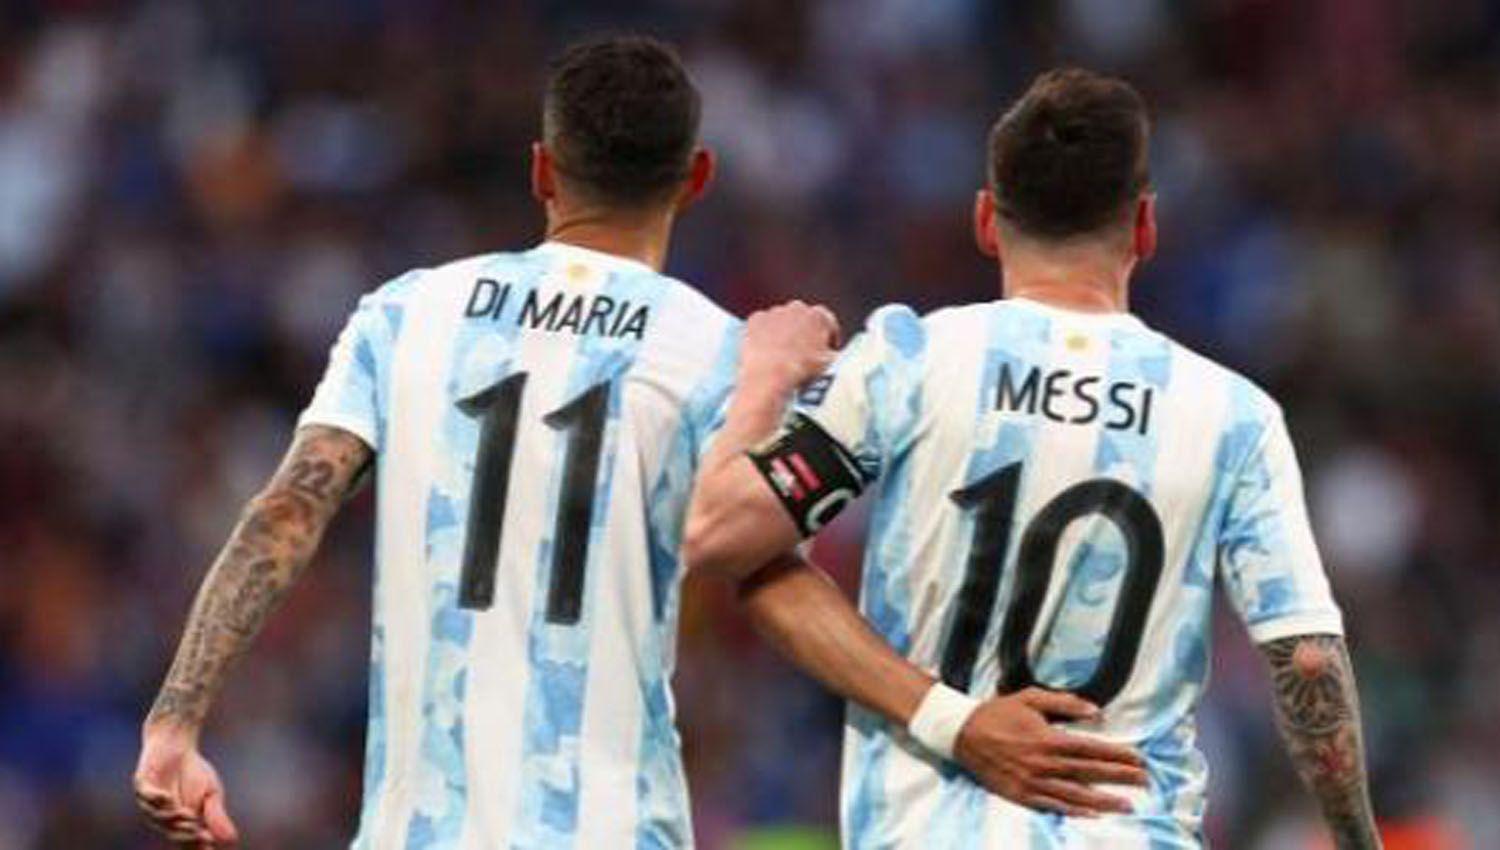 Messi confiacutea en la recuperacioacuten de Di Mariacutea y Dybala